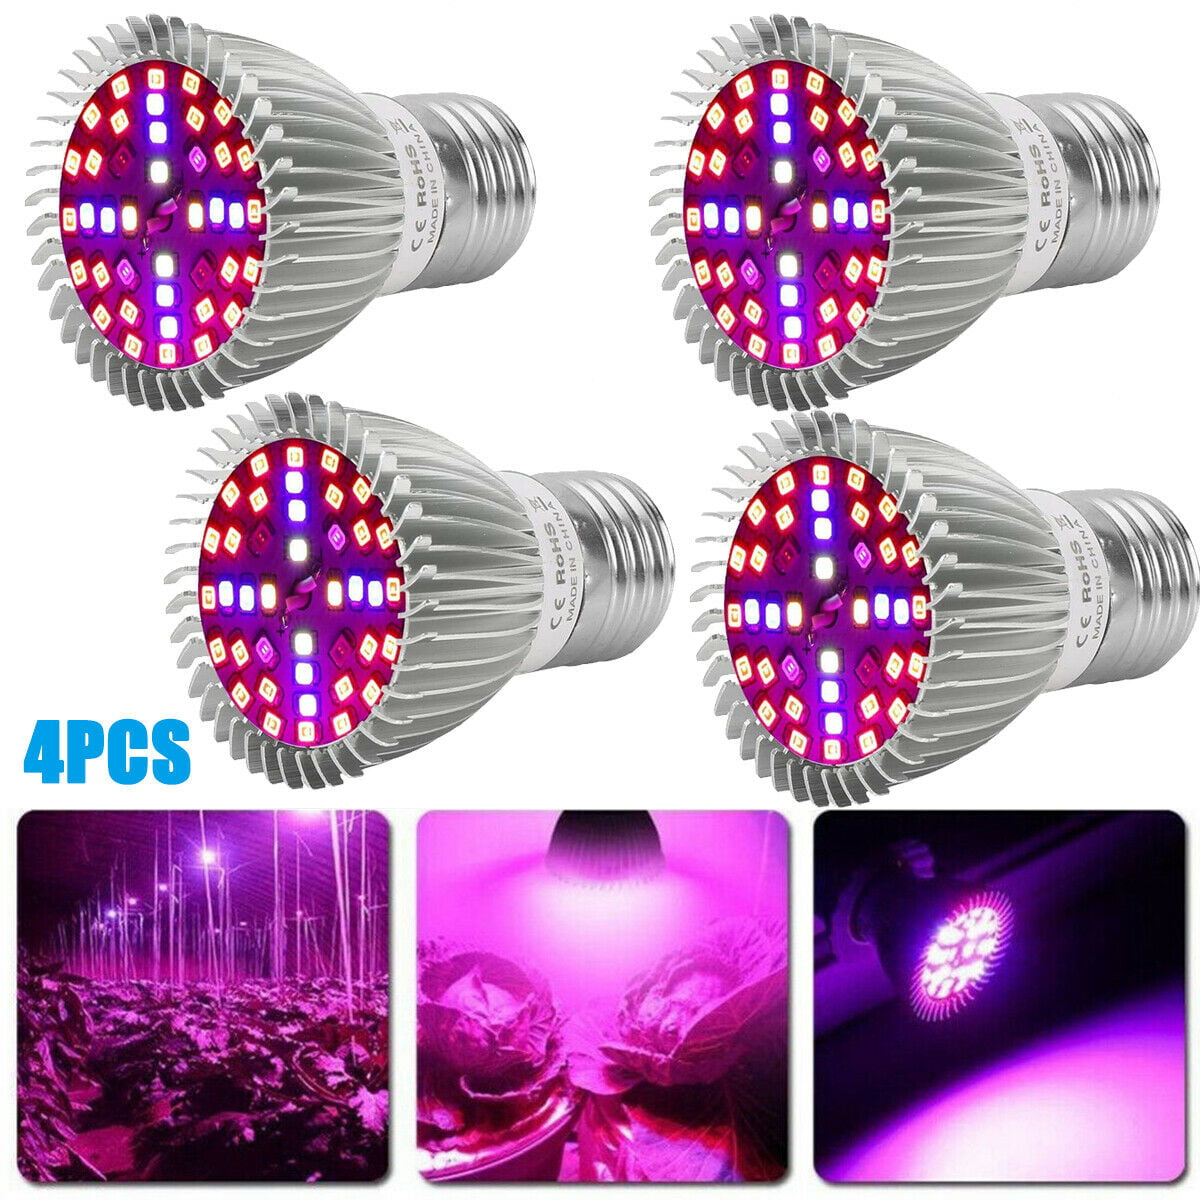 4X 100W LED Grow Light Full Spectrum For Indoor Hydroponic Veg Flower Plant Lamp 